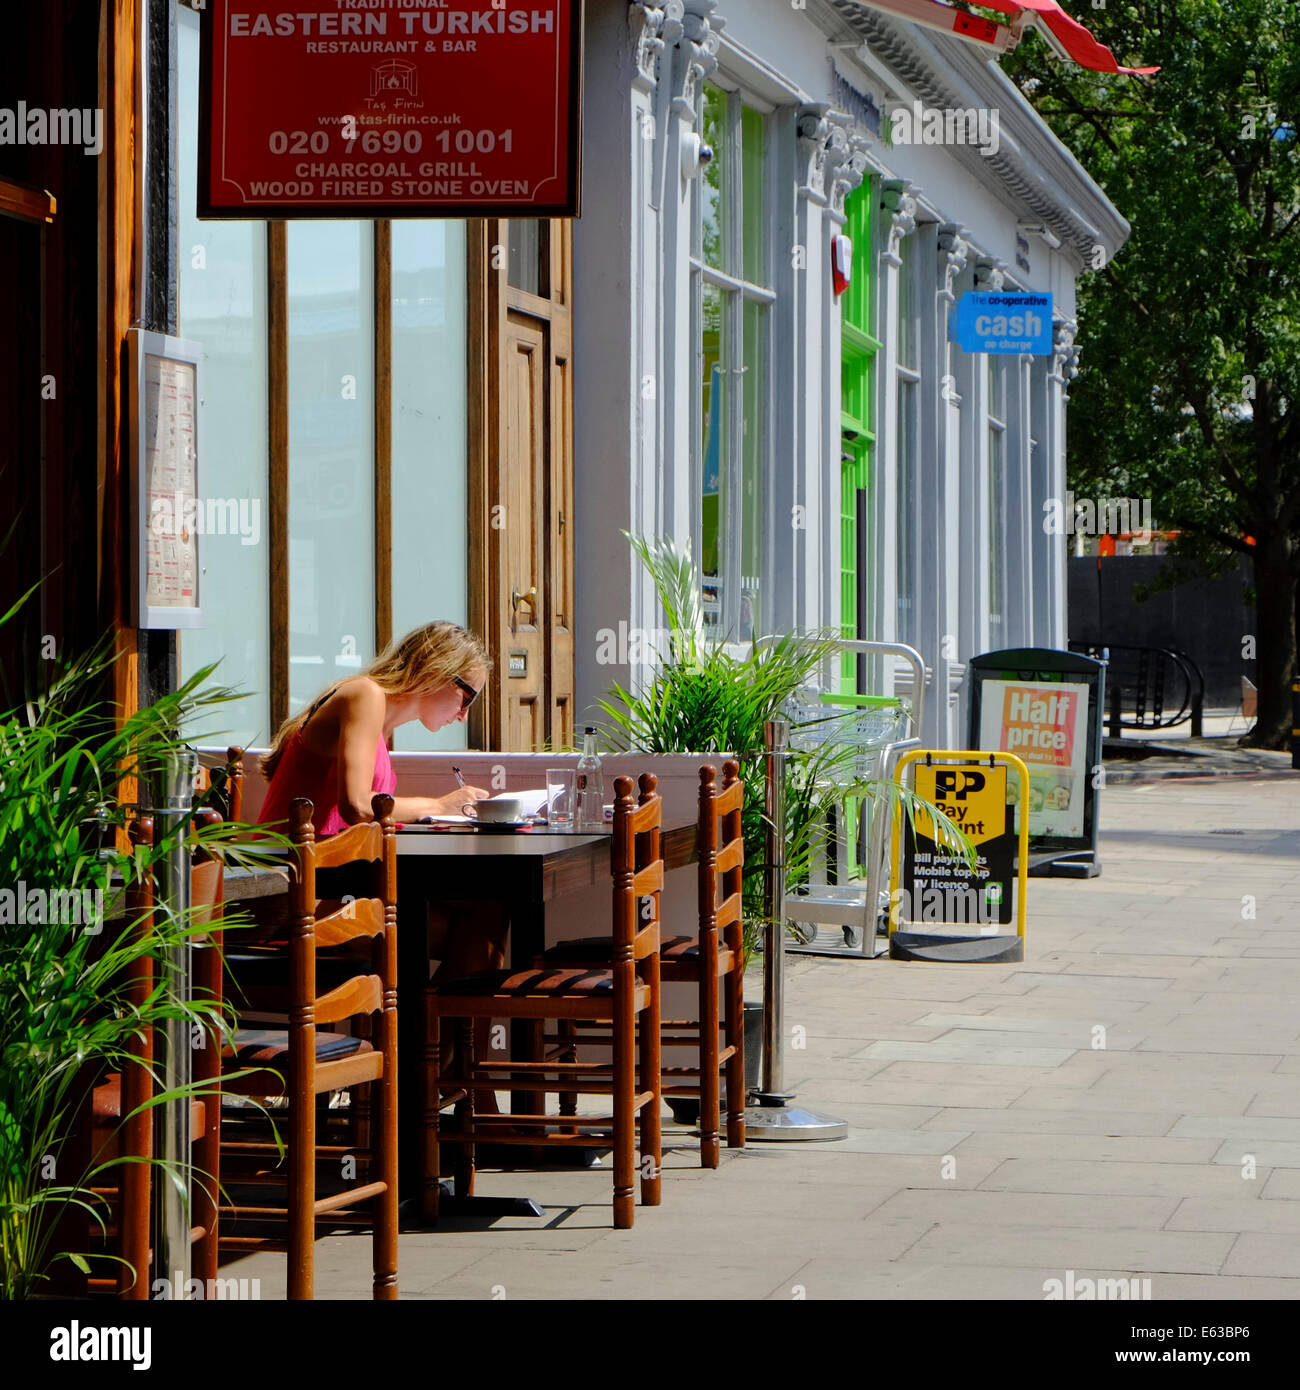 blonde Frau sitzt schreiben Brief & Kaffeetrinken in Ost-türkischen Restaurant in London Stockfoto